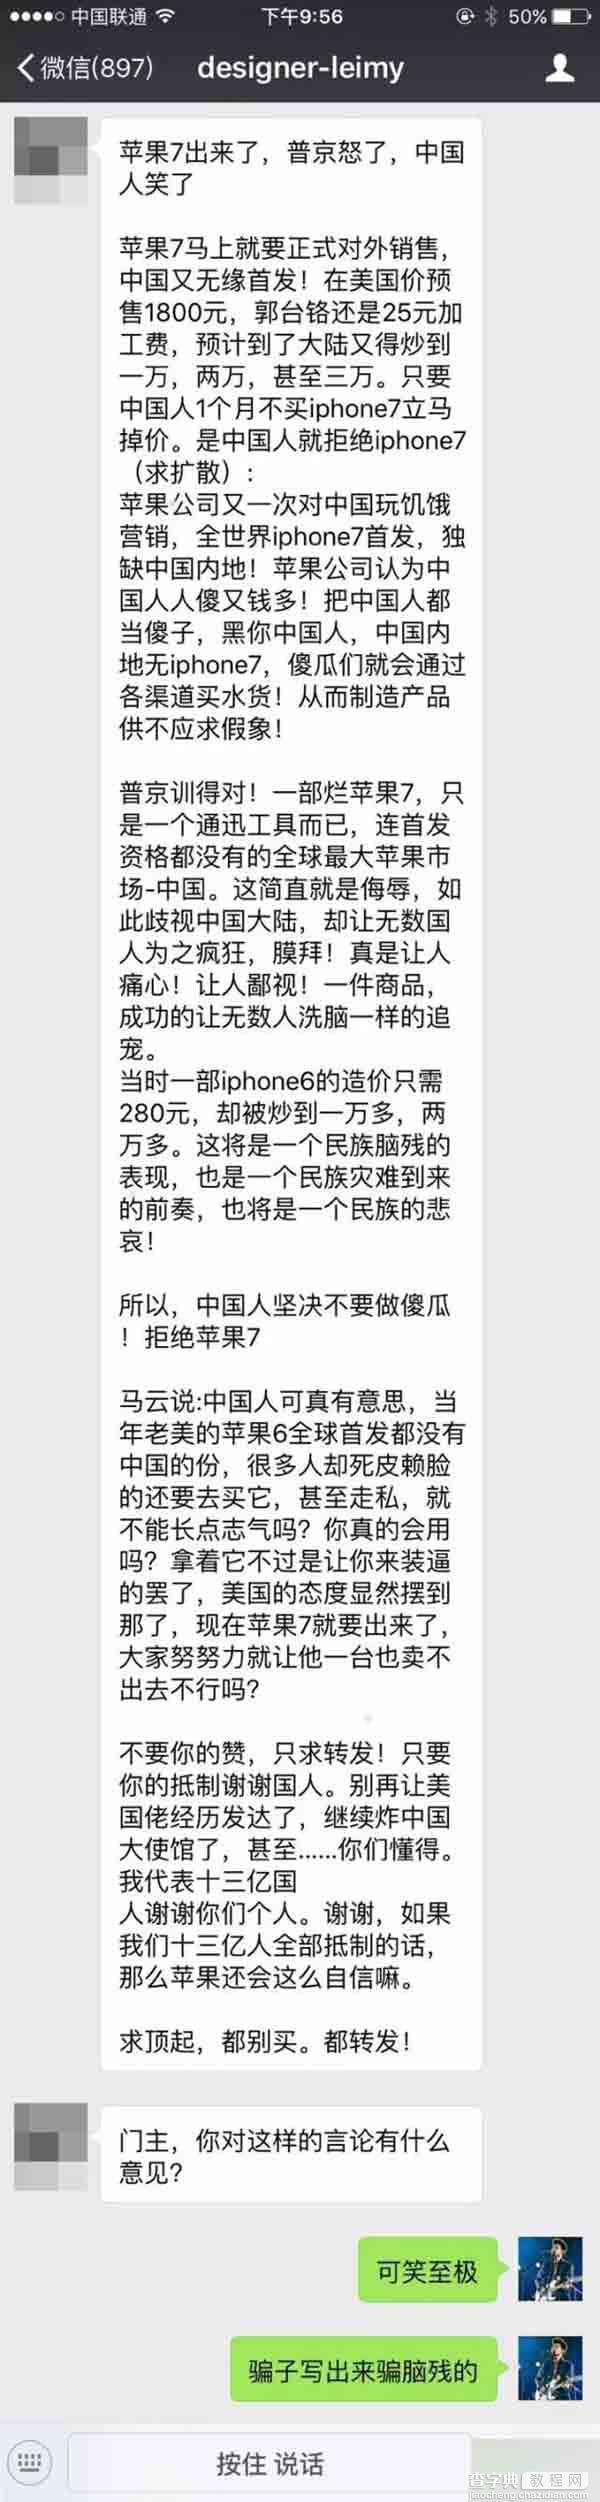 苹果iPhone输入法现击沉中国 原来真相是这样6